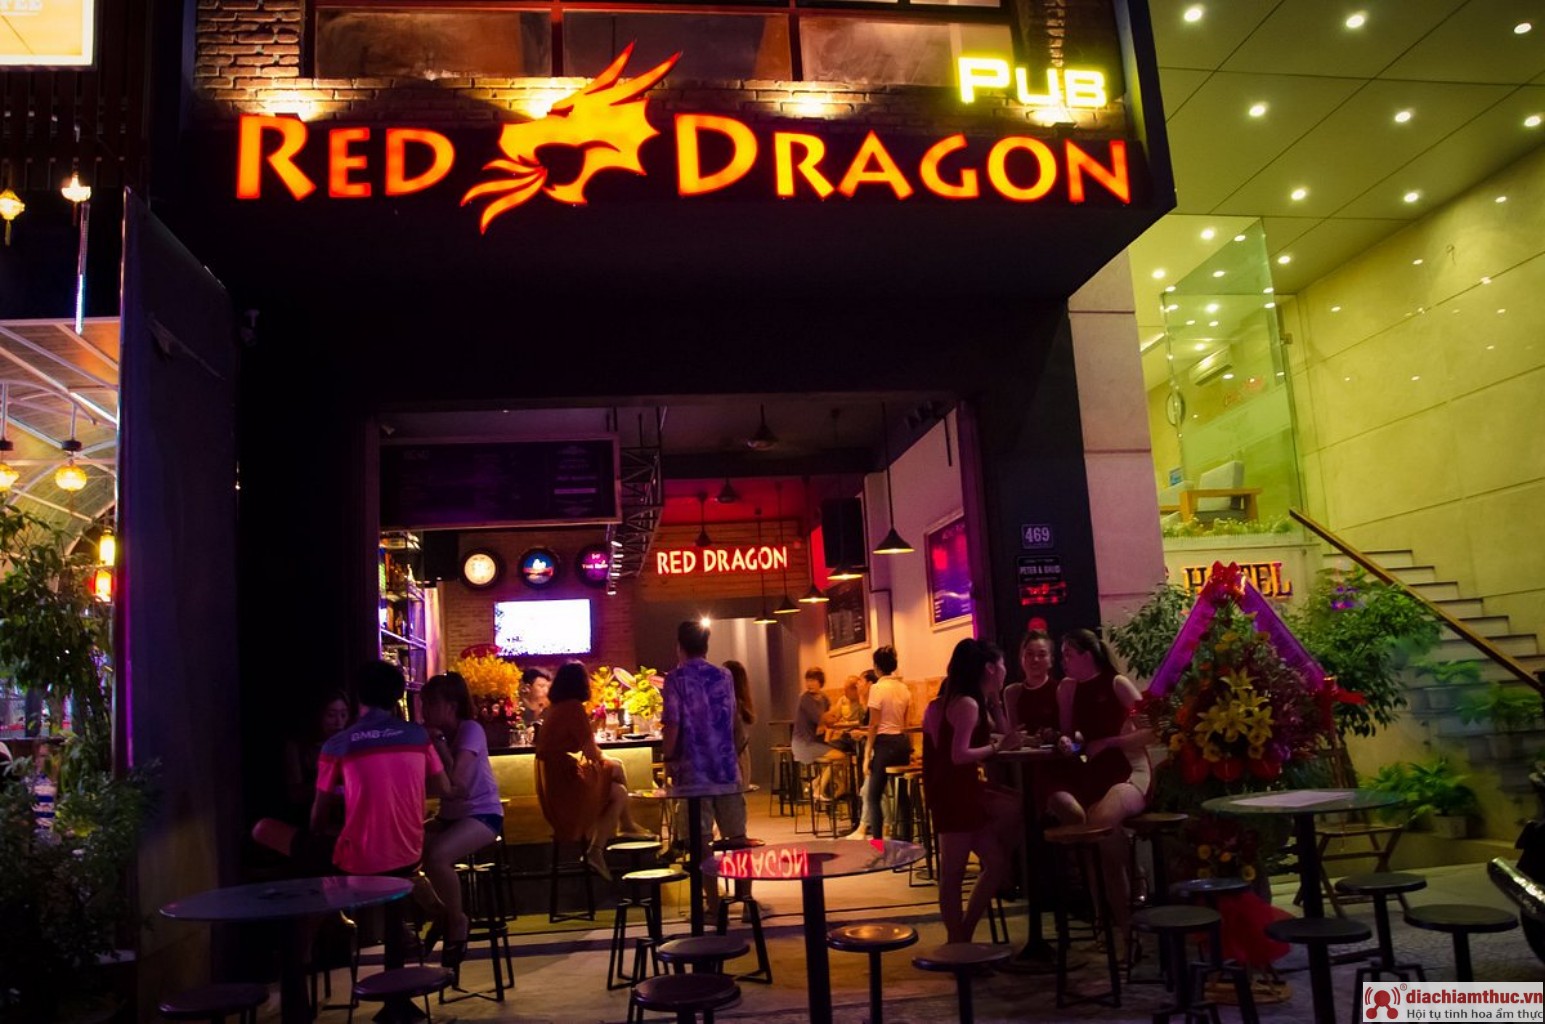 Red Dragon Pub